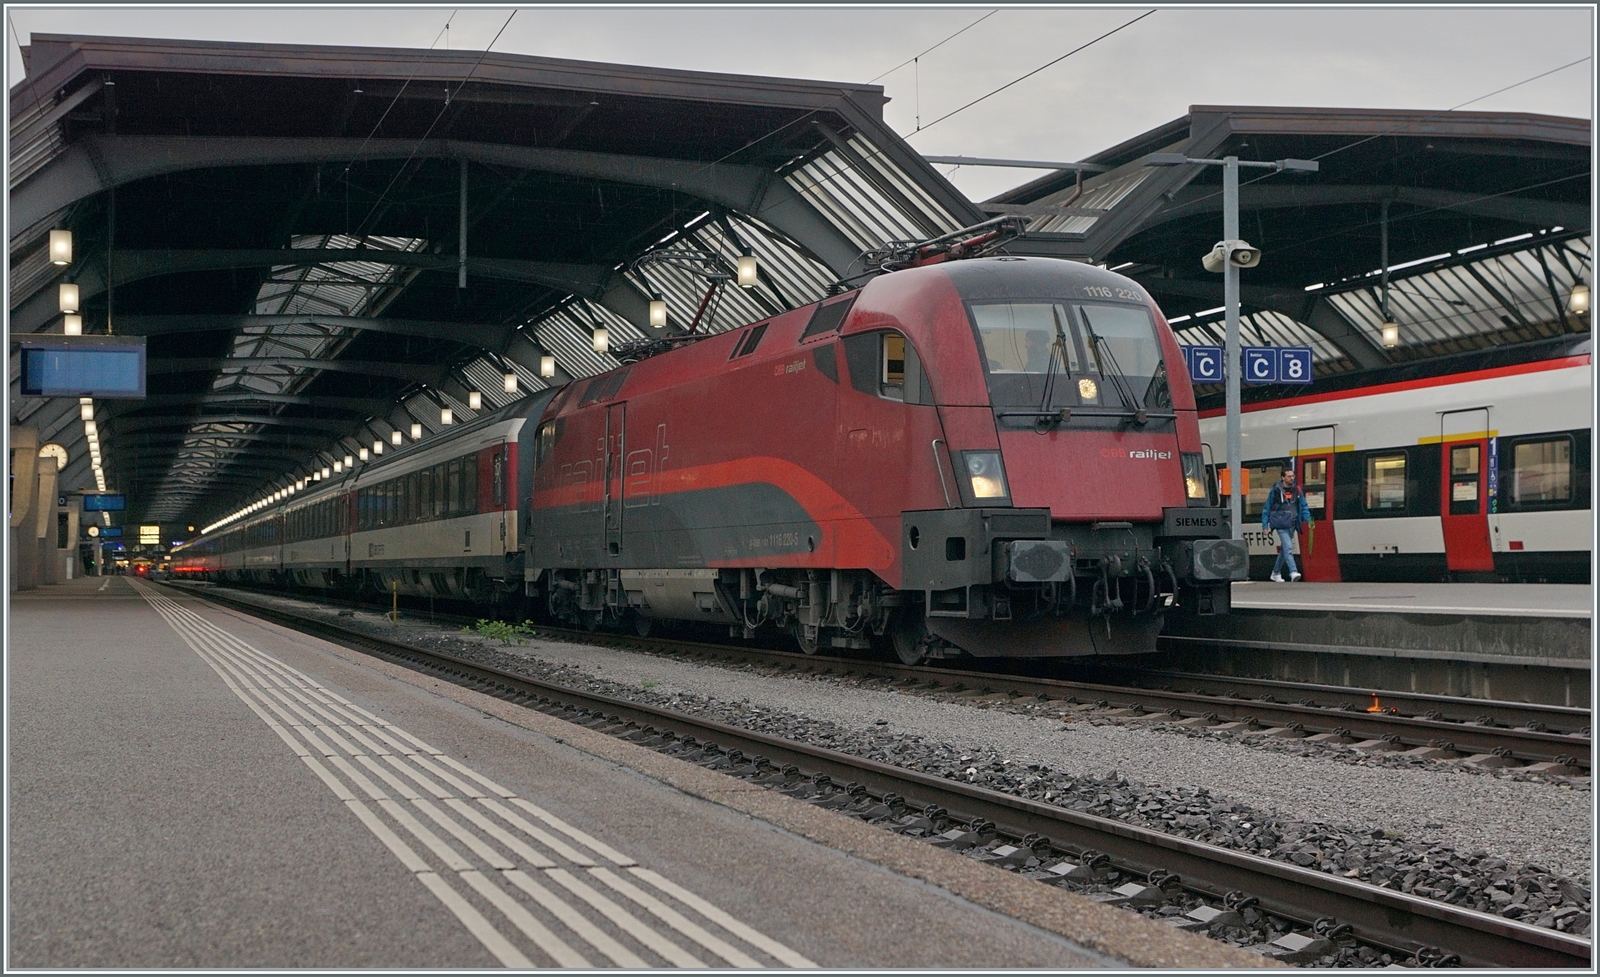 Die ÖBB 1116 220 steht in Zürich mit dem EuroCity  Transalpin  mit der Zugsnummer EC 19793 nach Graz zur Abfahrt bereit. Zwar sind ÖBB Lokomotiven in Zürich HB keine Seltenheit, aber sie kommen jeweils mit RJ-Garnituren nach Zürich. Eine ÖBB 1116 vor SBB Wagen hingegen stellt schon die Ausnahme dar. Der Zug hat infolge Bauarbeiten den ungewohnten Laufweg Zürich (ab 8:33) - Bregenz - München - Salzburg - Schwarzach St. Veit Bischofshofen - Leoben - Graz (an 21:32) und wird somit 12 Stunden und 59 Minuten unterwegs sein. 

19. Okt. 2023